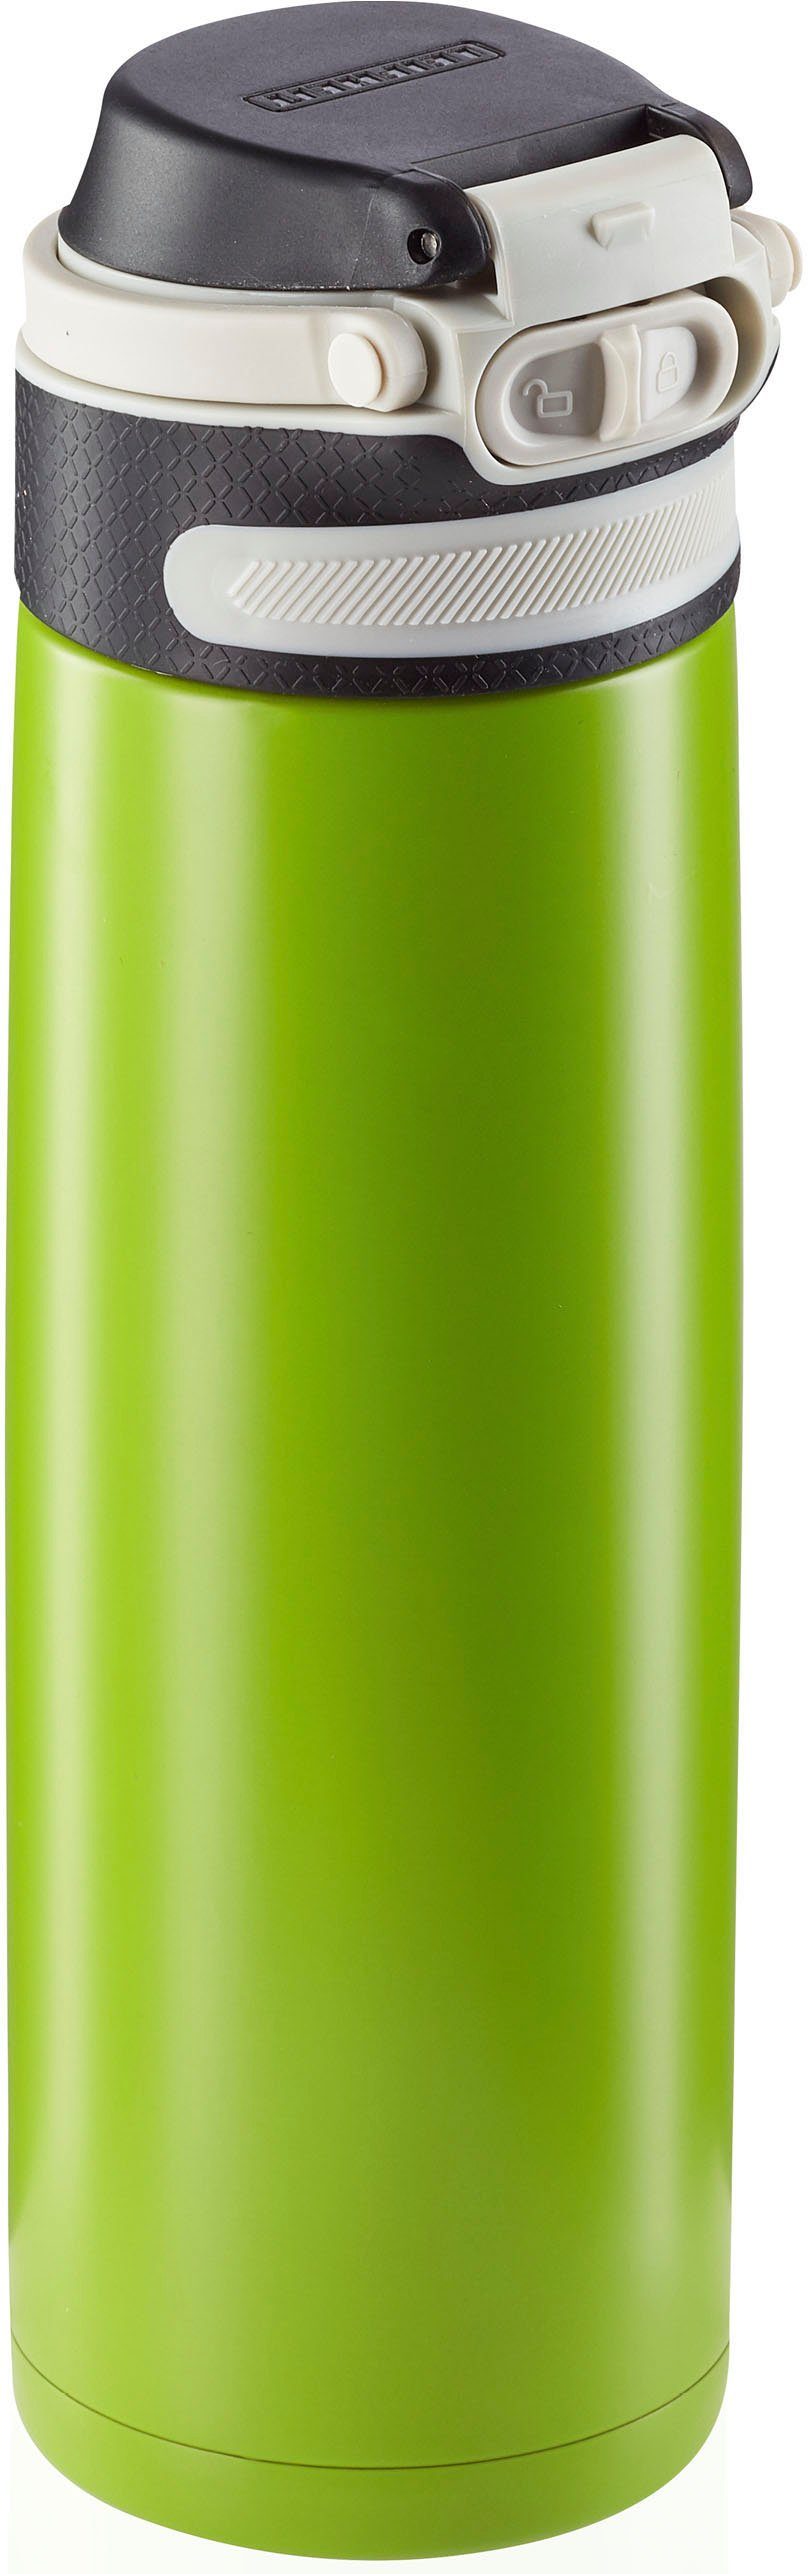 Leifheit 600 ml Thermoflasche kiwi Flip,